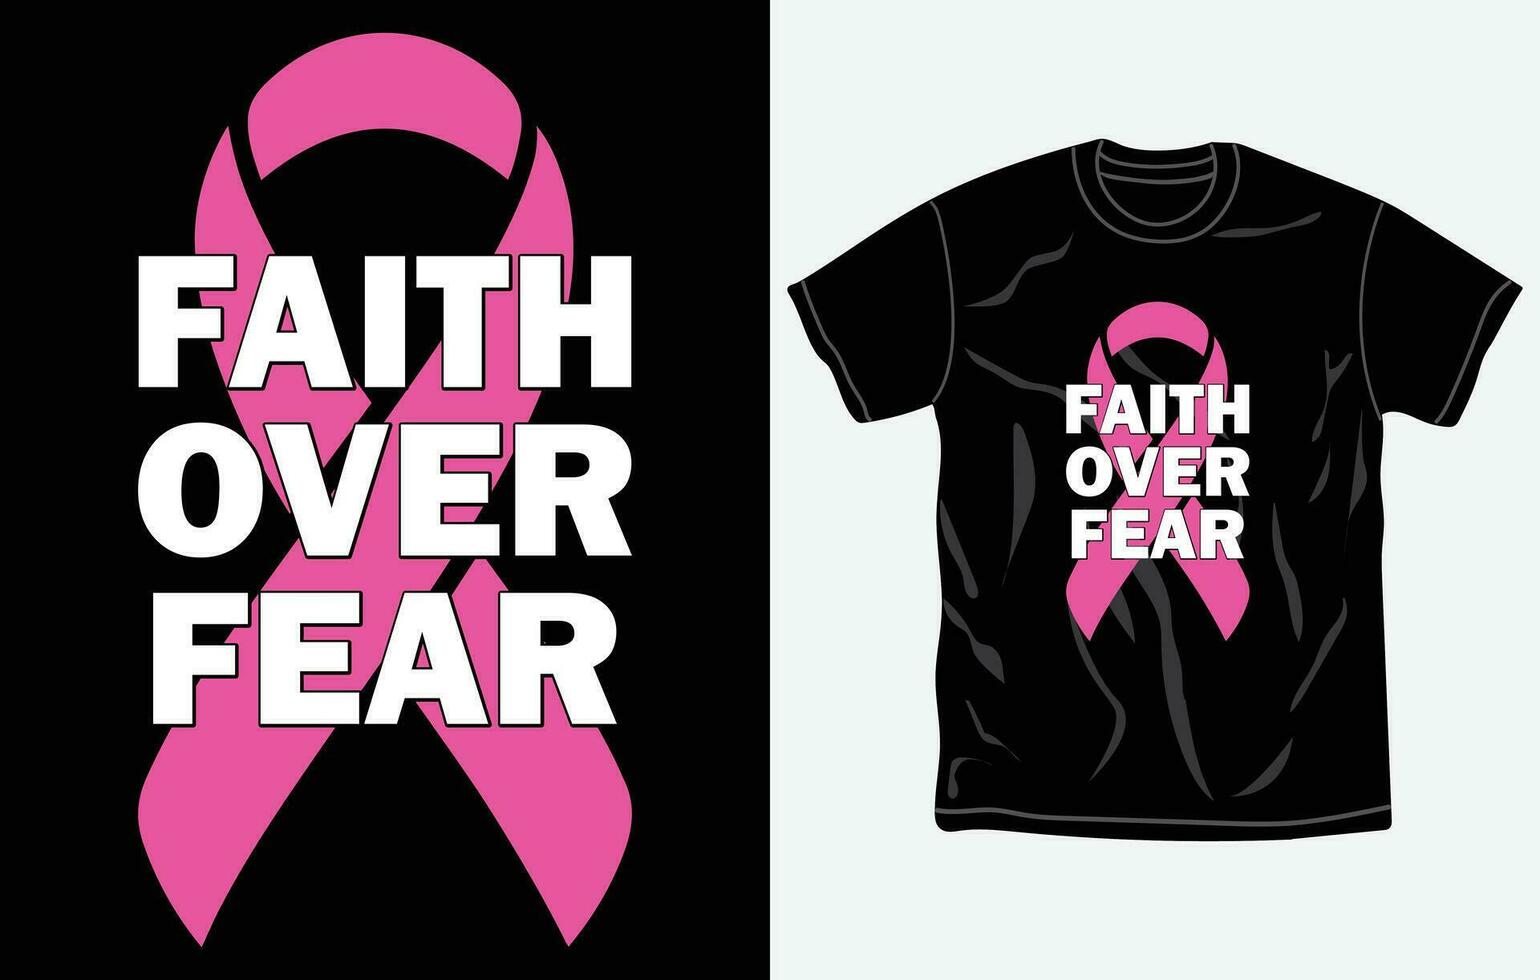 bröst cancer medvetenhet månad t-shirt design, citat, oktober rosa cancer t-shirt, typografi tshirt vektor grafisk, bakgrund, mugg, klistermärke, fullt redigerbar och tryckbar vektor mall.